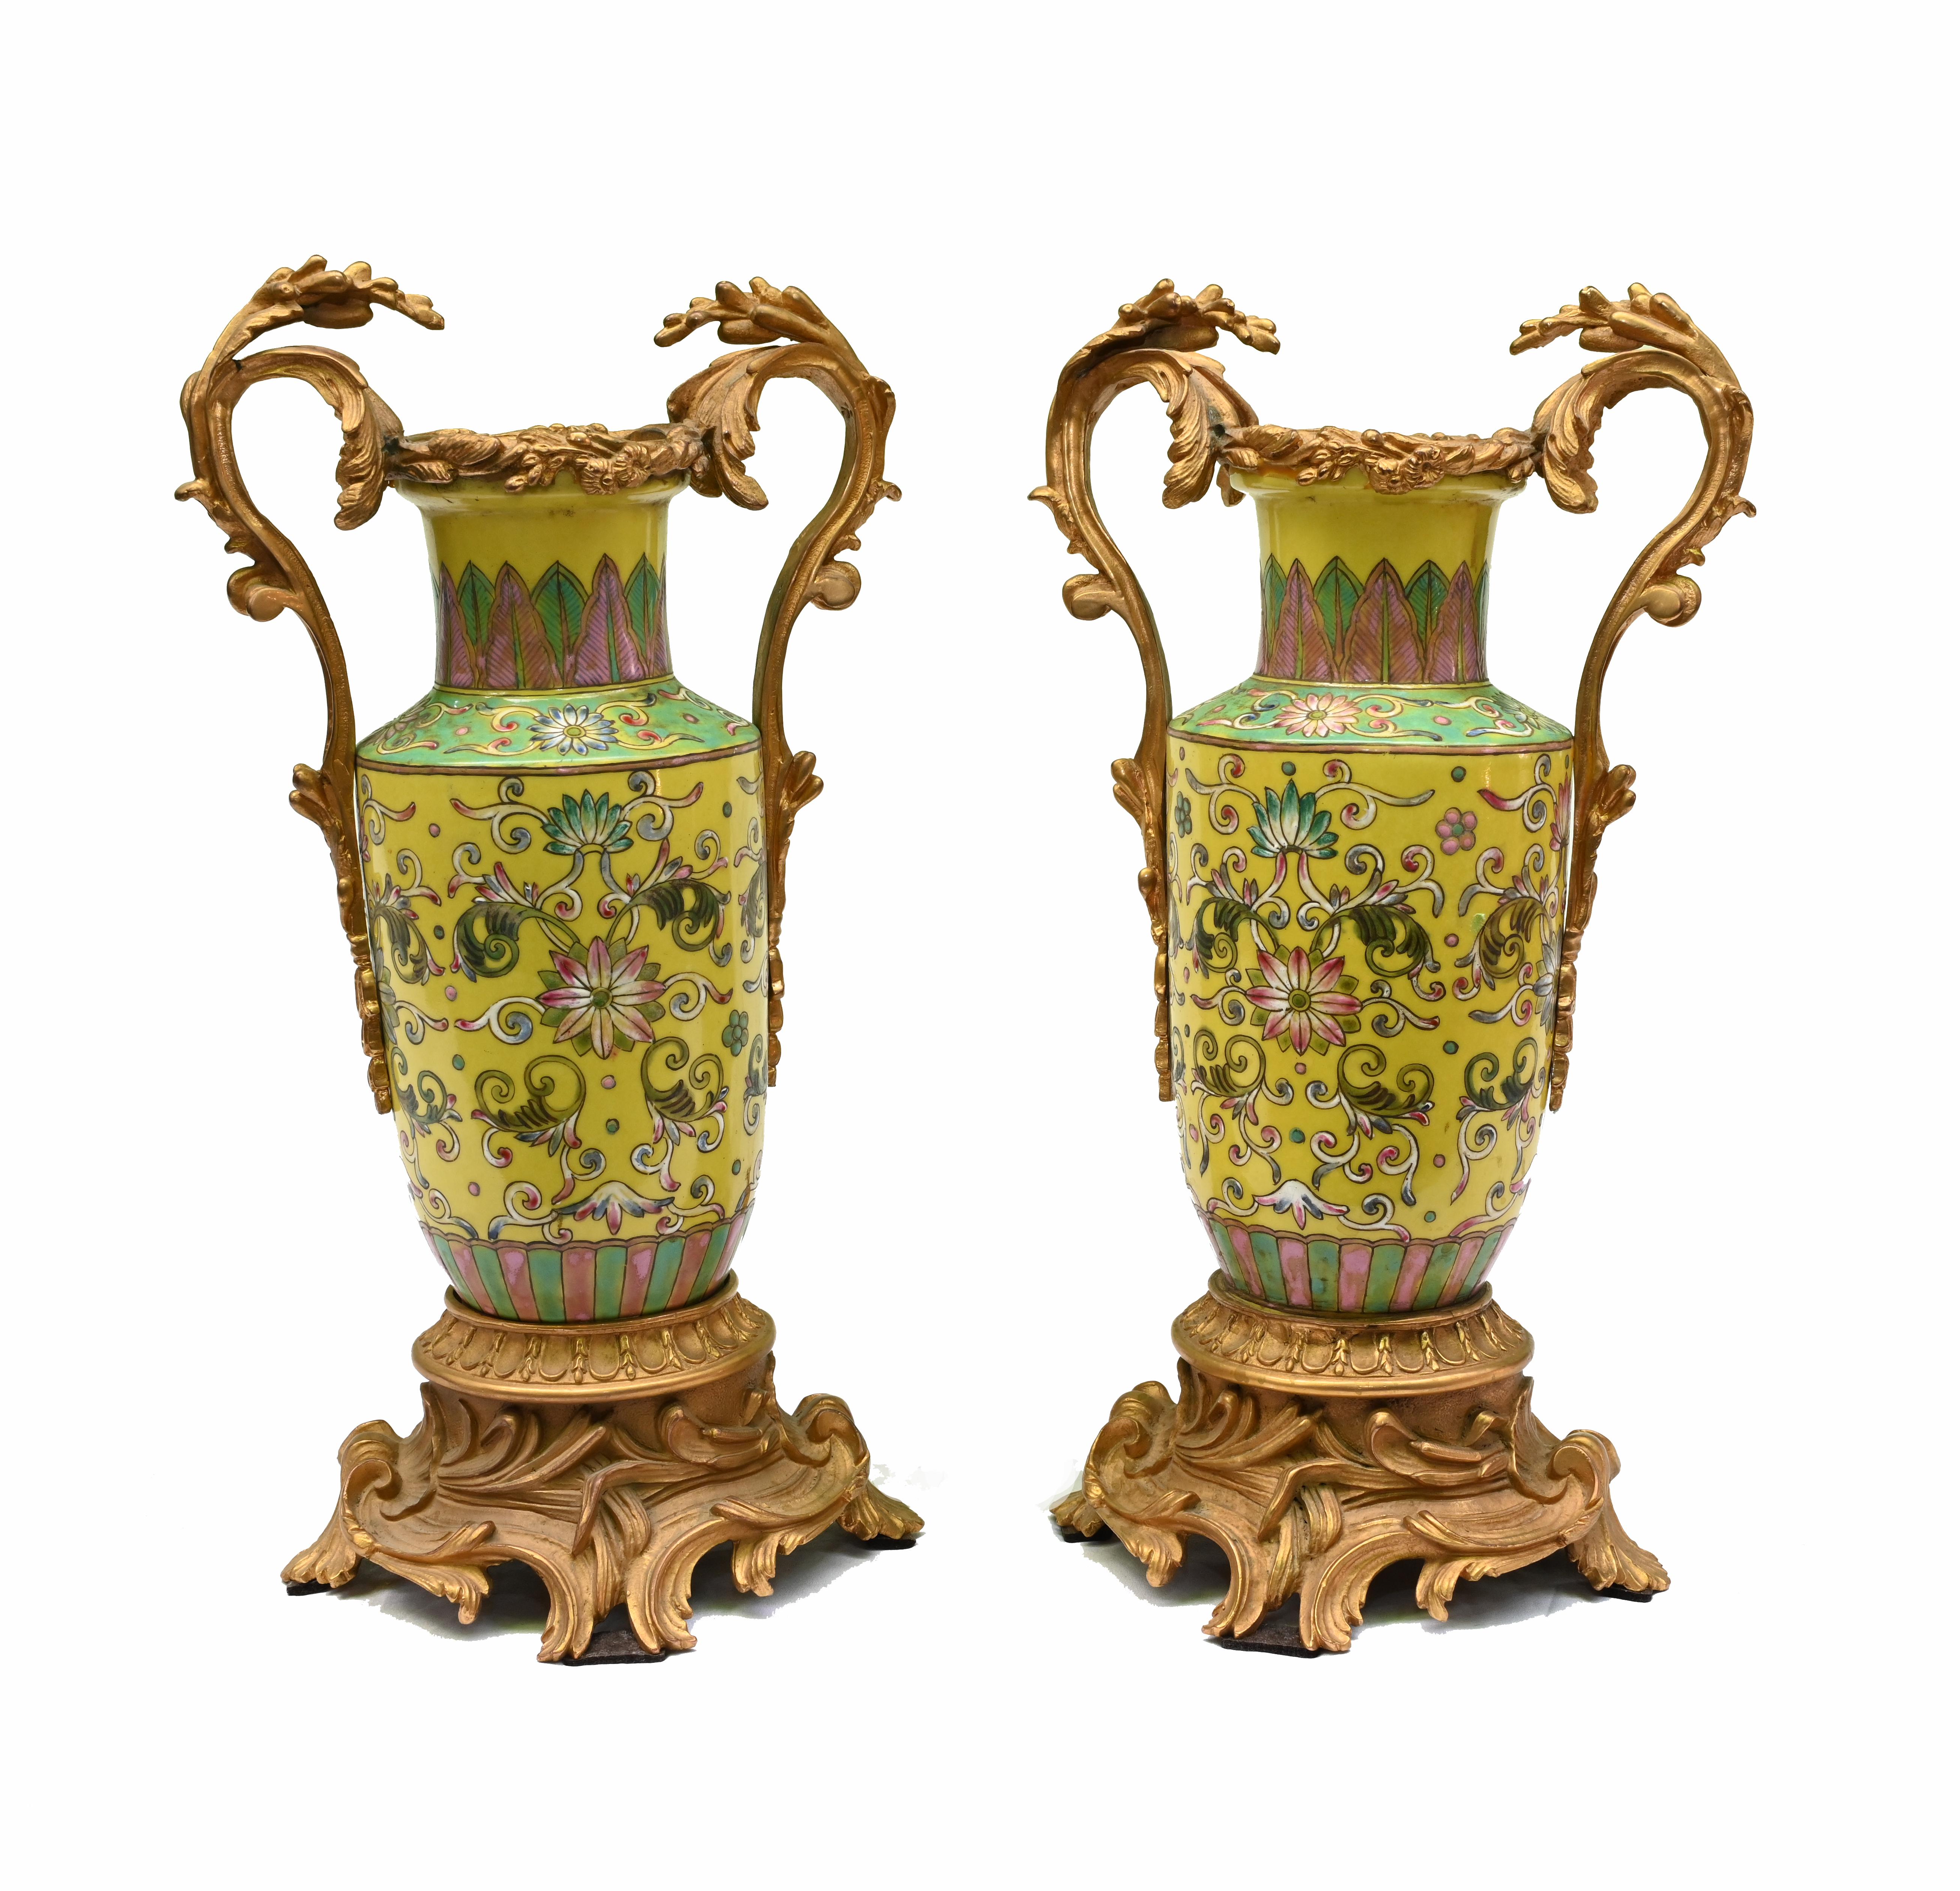 Elegante paire de vases anciens en porcelaine de la Famille Jaune de Chine sur montures dorées
Circa 1920 sur cette jolie paire décorée de motifs floraux.
Nous les avons achetés dans une résidence privée de Mayfair, à Londres.
Offert en grande